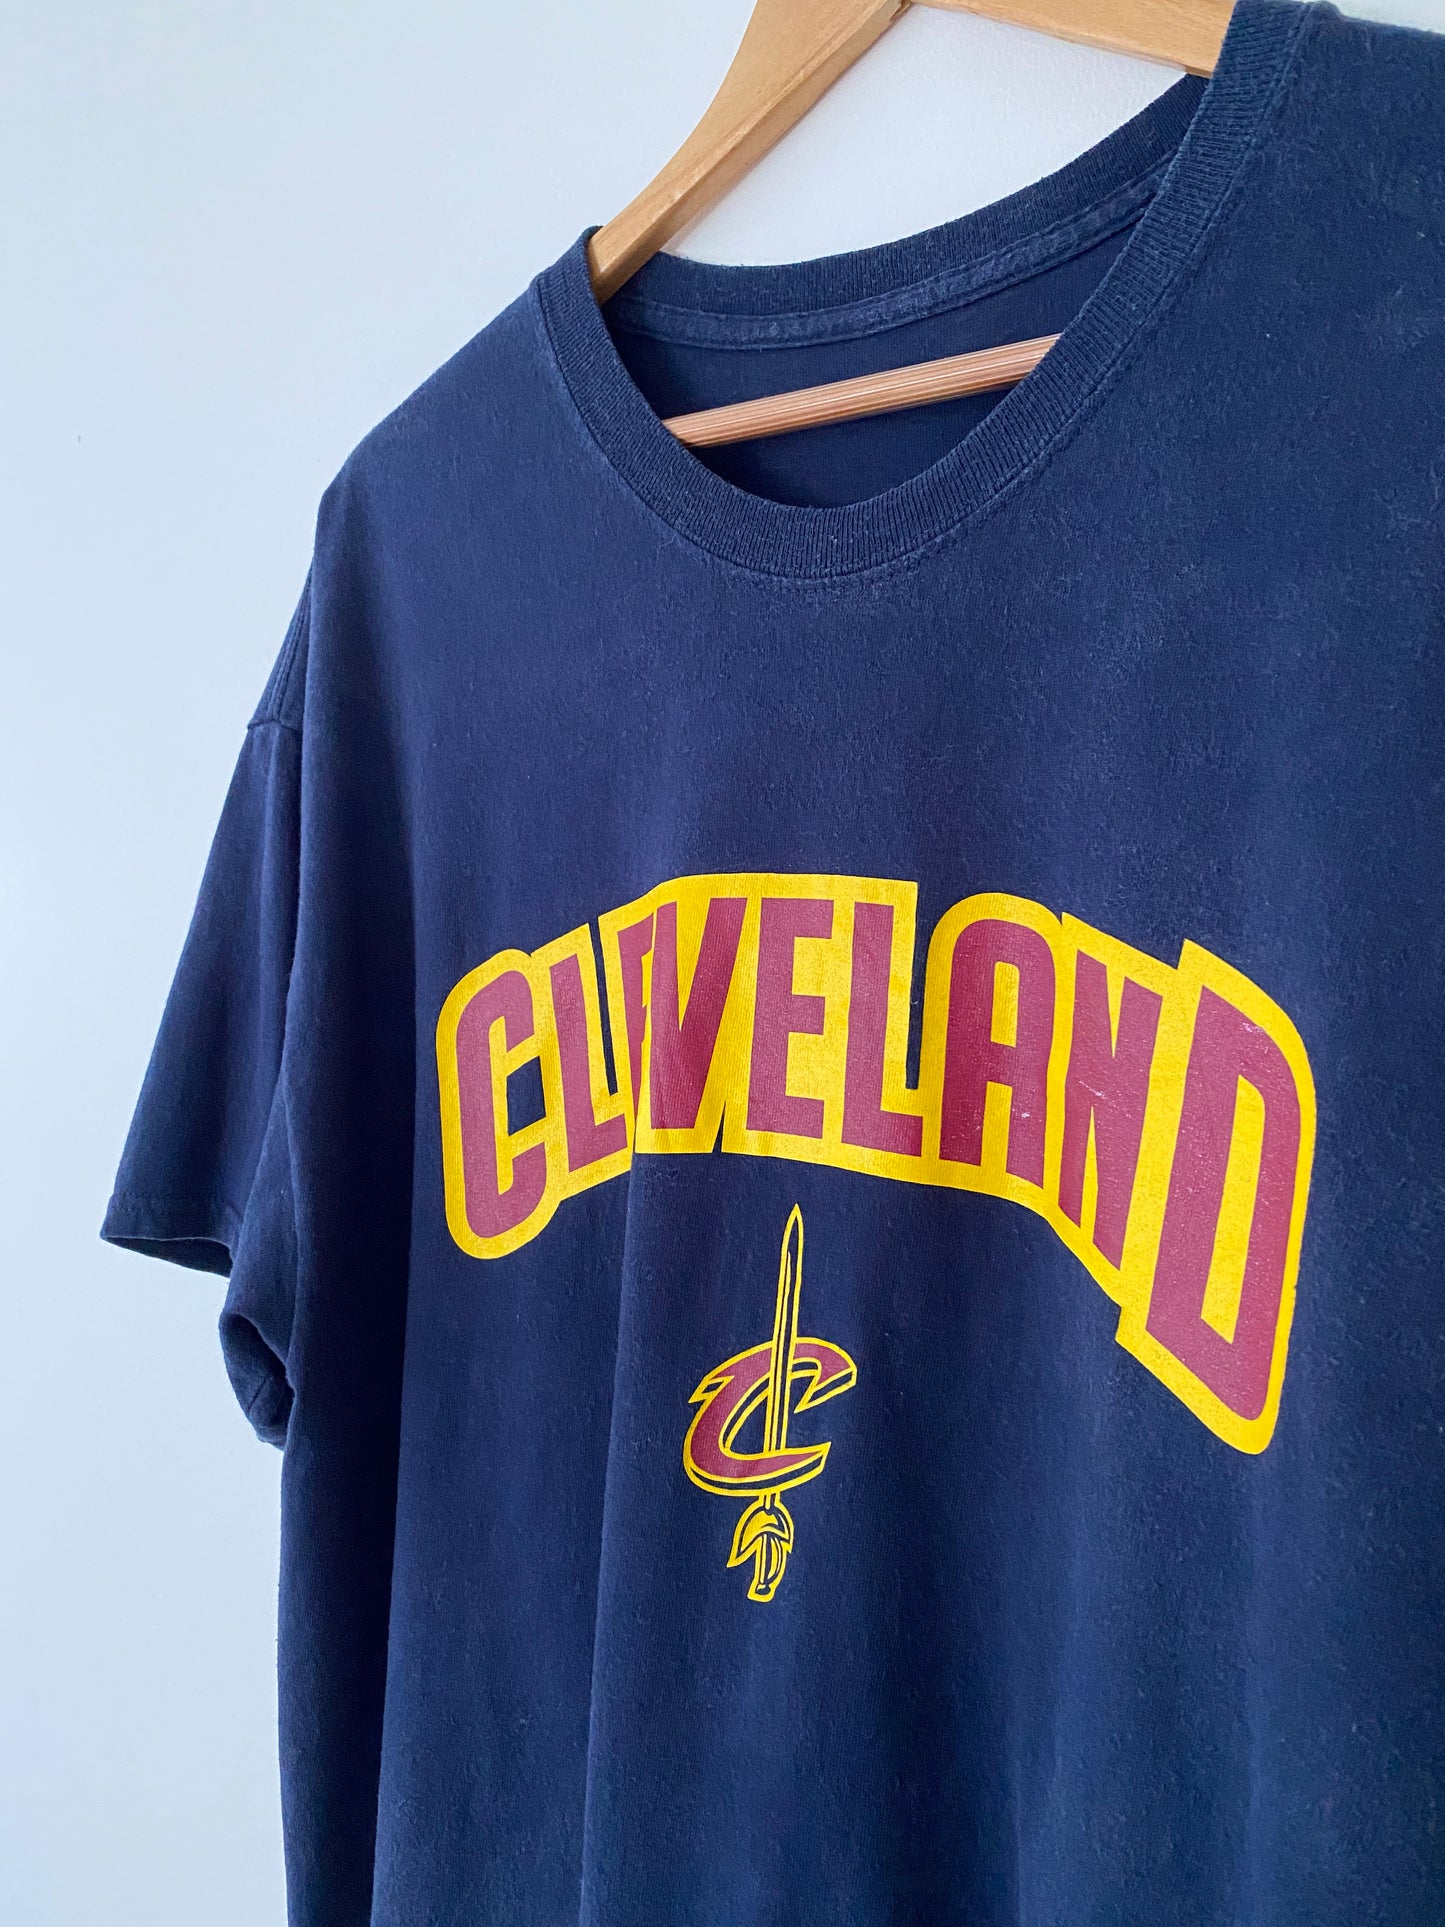 Cleveland Cavaliers Basketball T-Shirt - XL